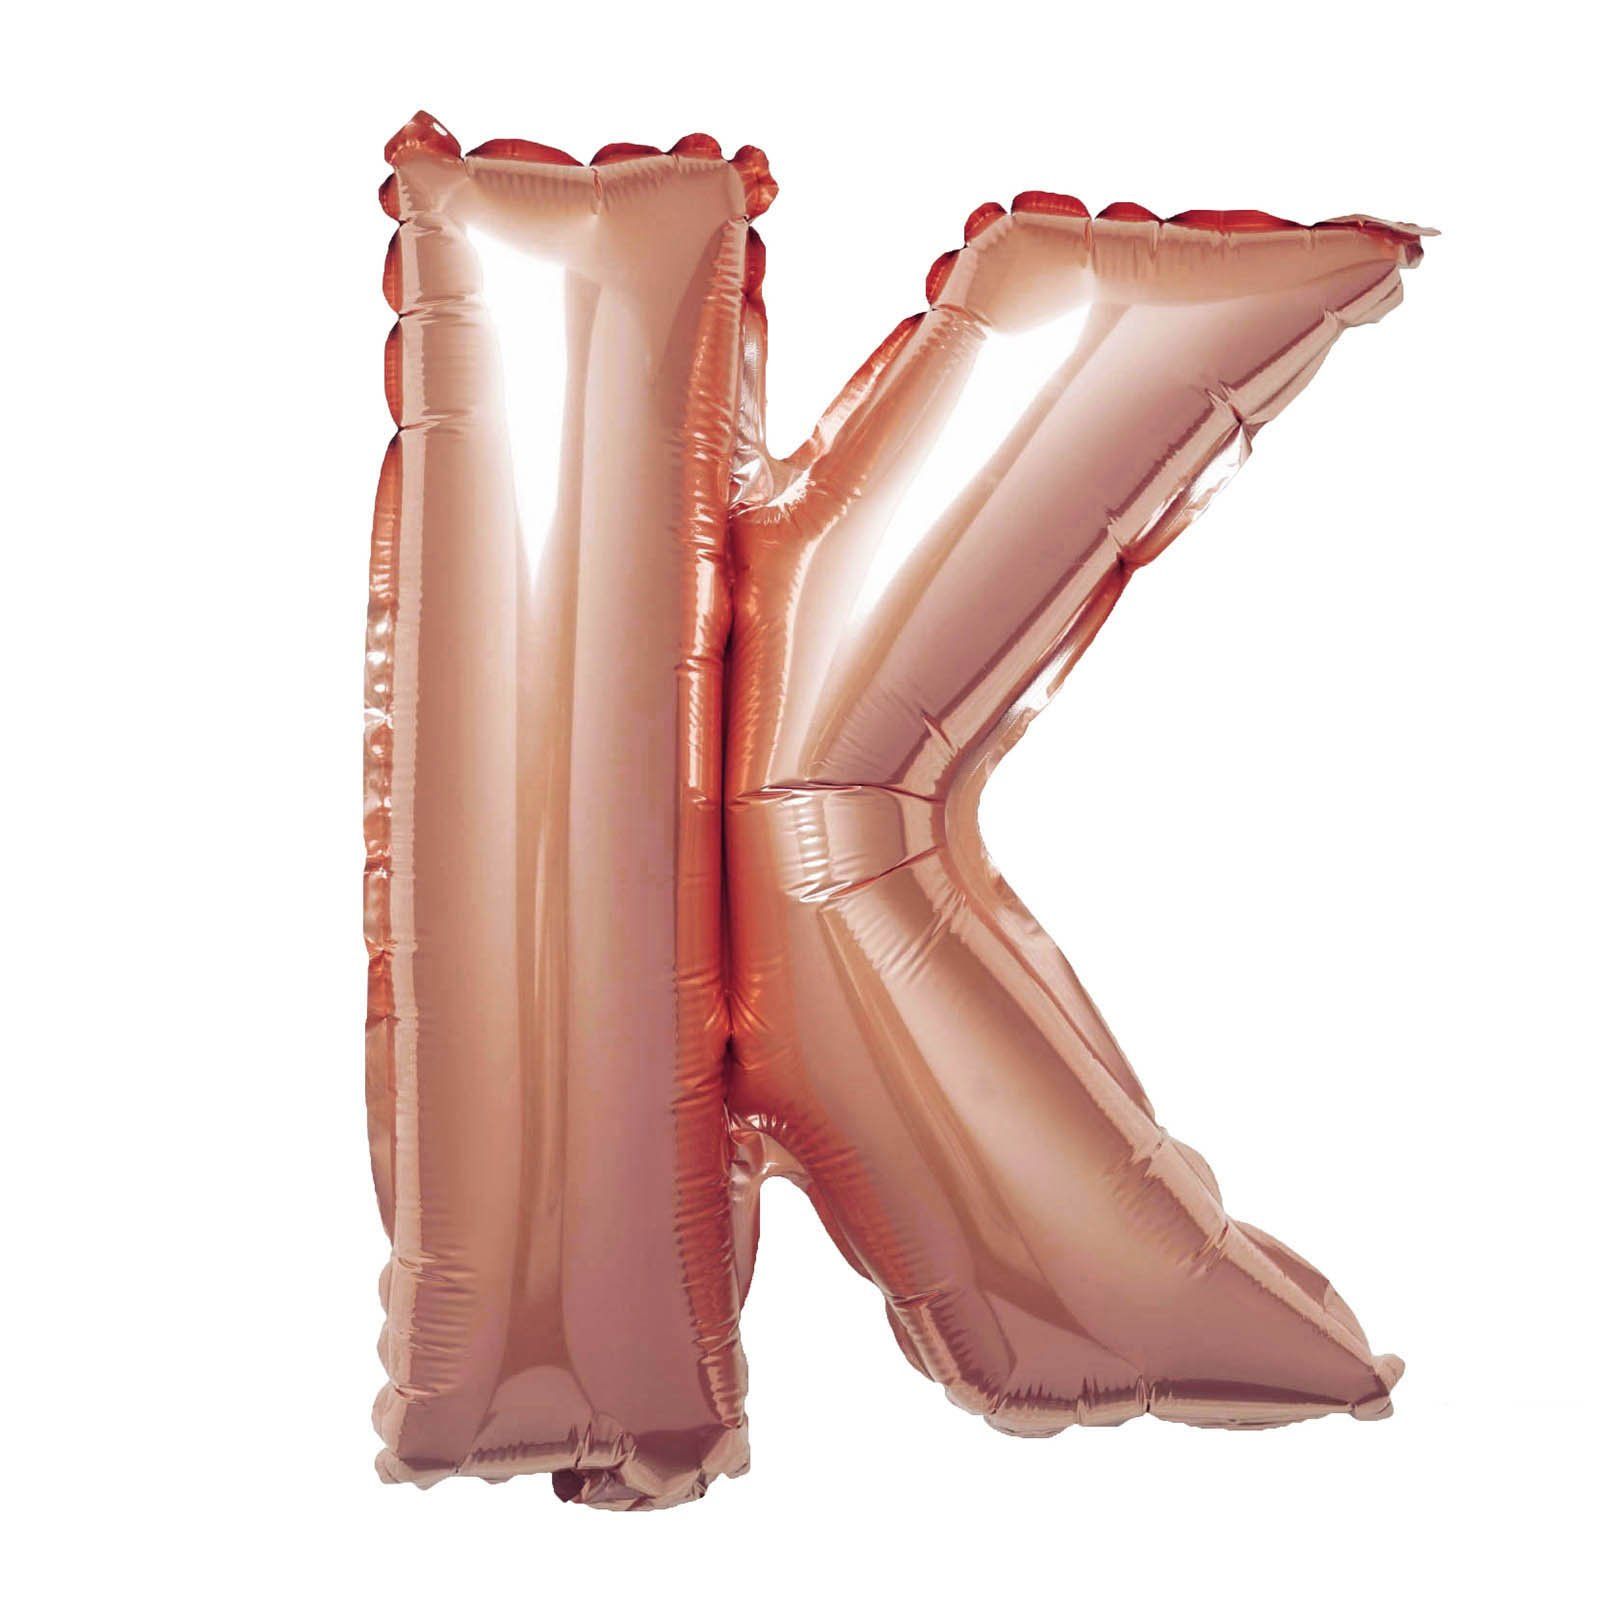  Bong bóng chữ cái 35cm màu vàng hồng (A-Z foil balloons - 16'' Rose Gold) 